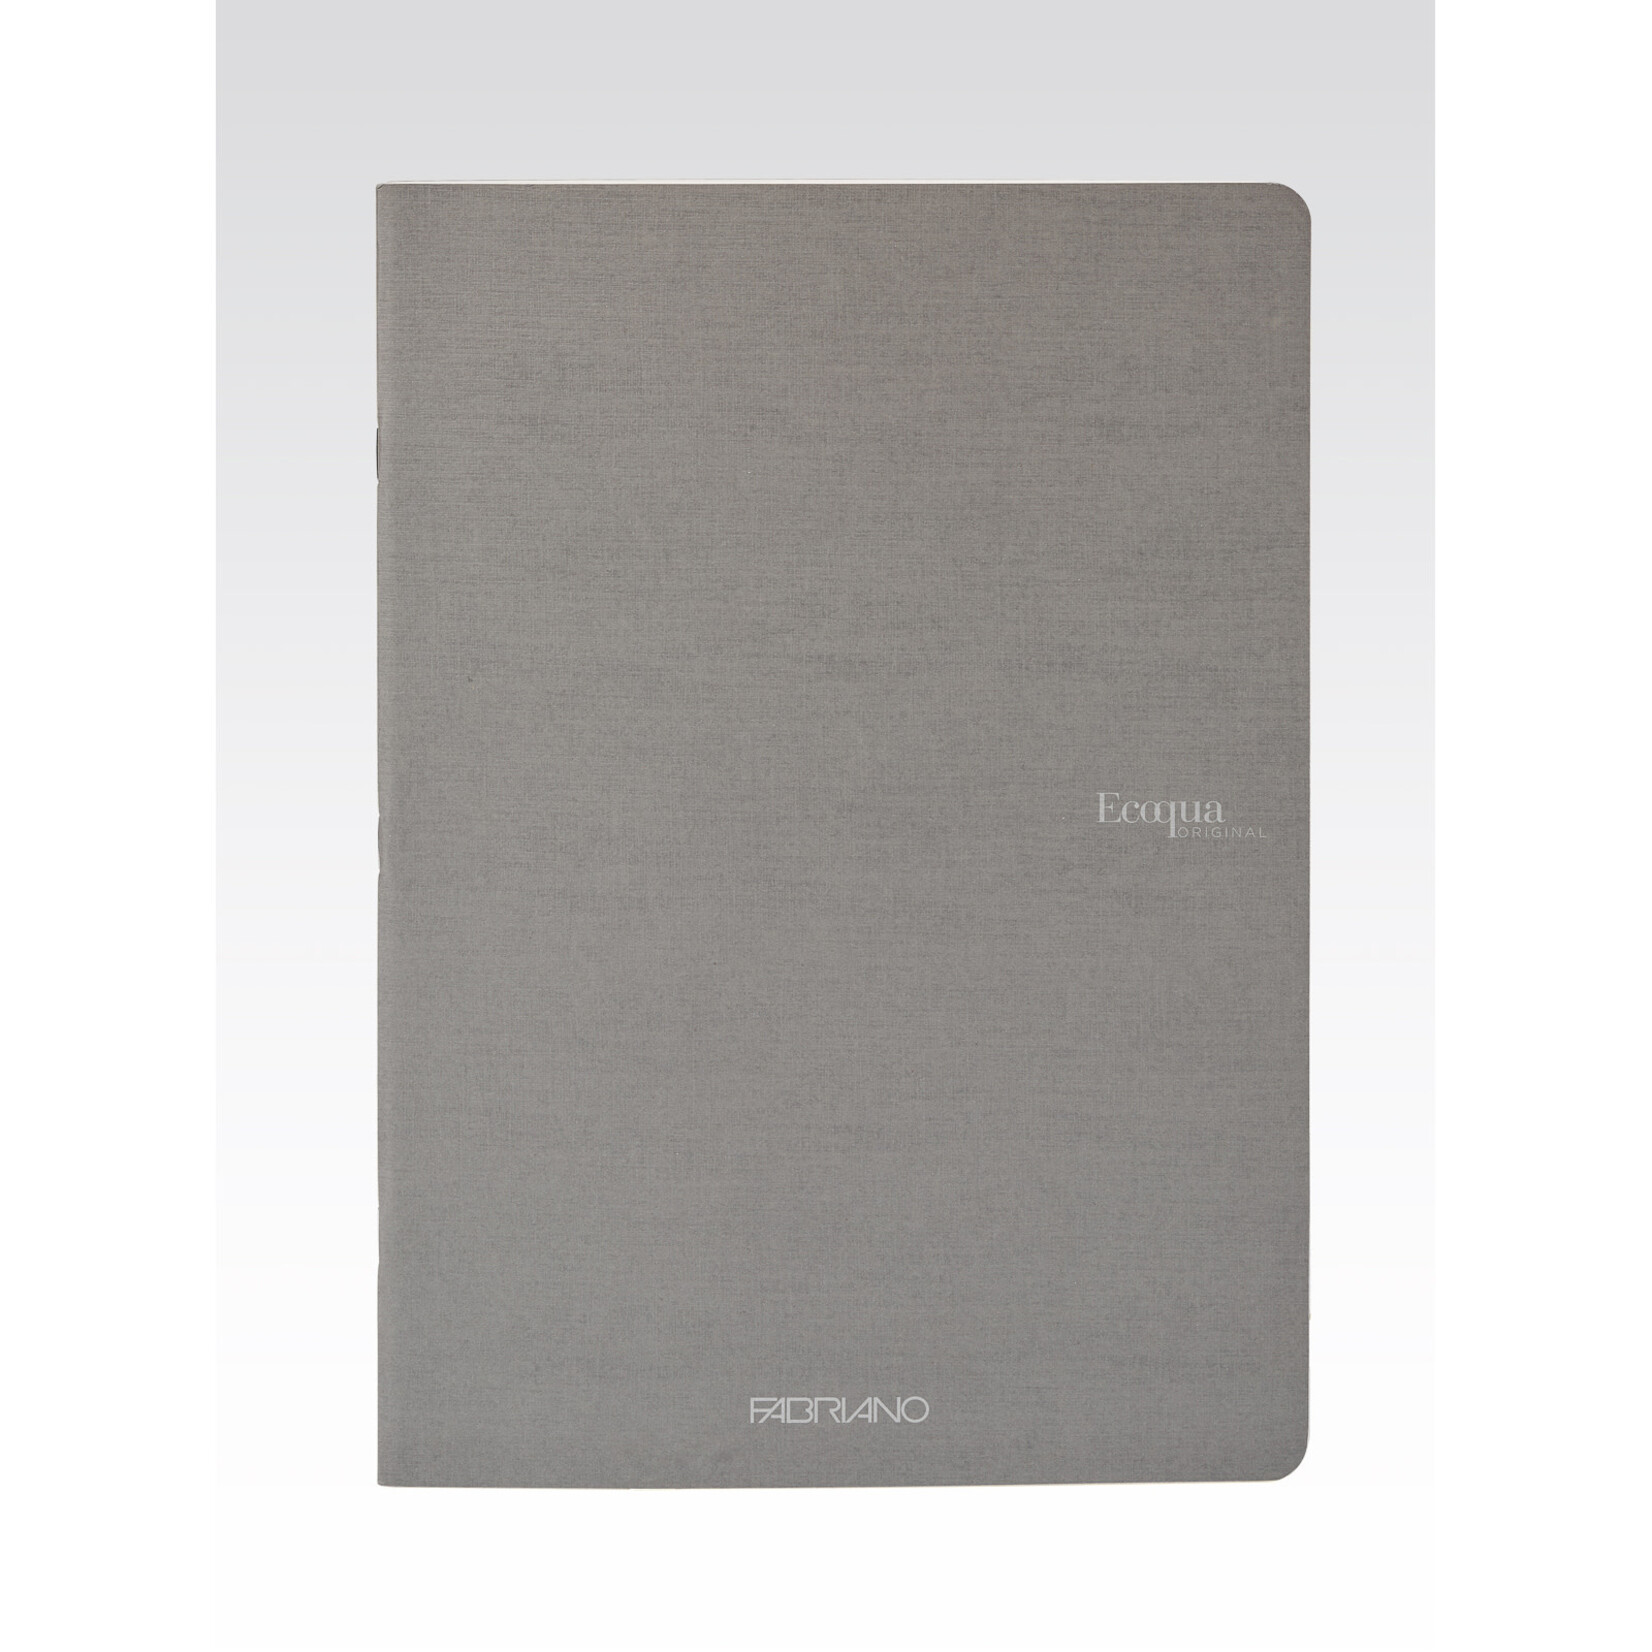 Fabriano Ecoqua Original Staple-Bound Notebooks, 5.8" x 8.3" (A5) - Blank, Grey - 40 Shts